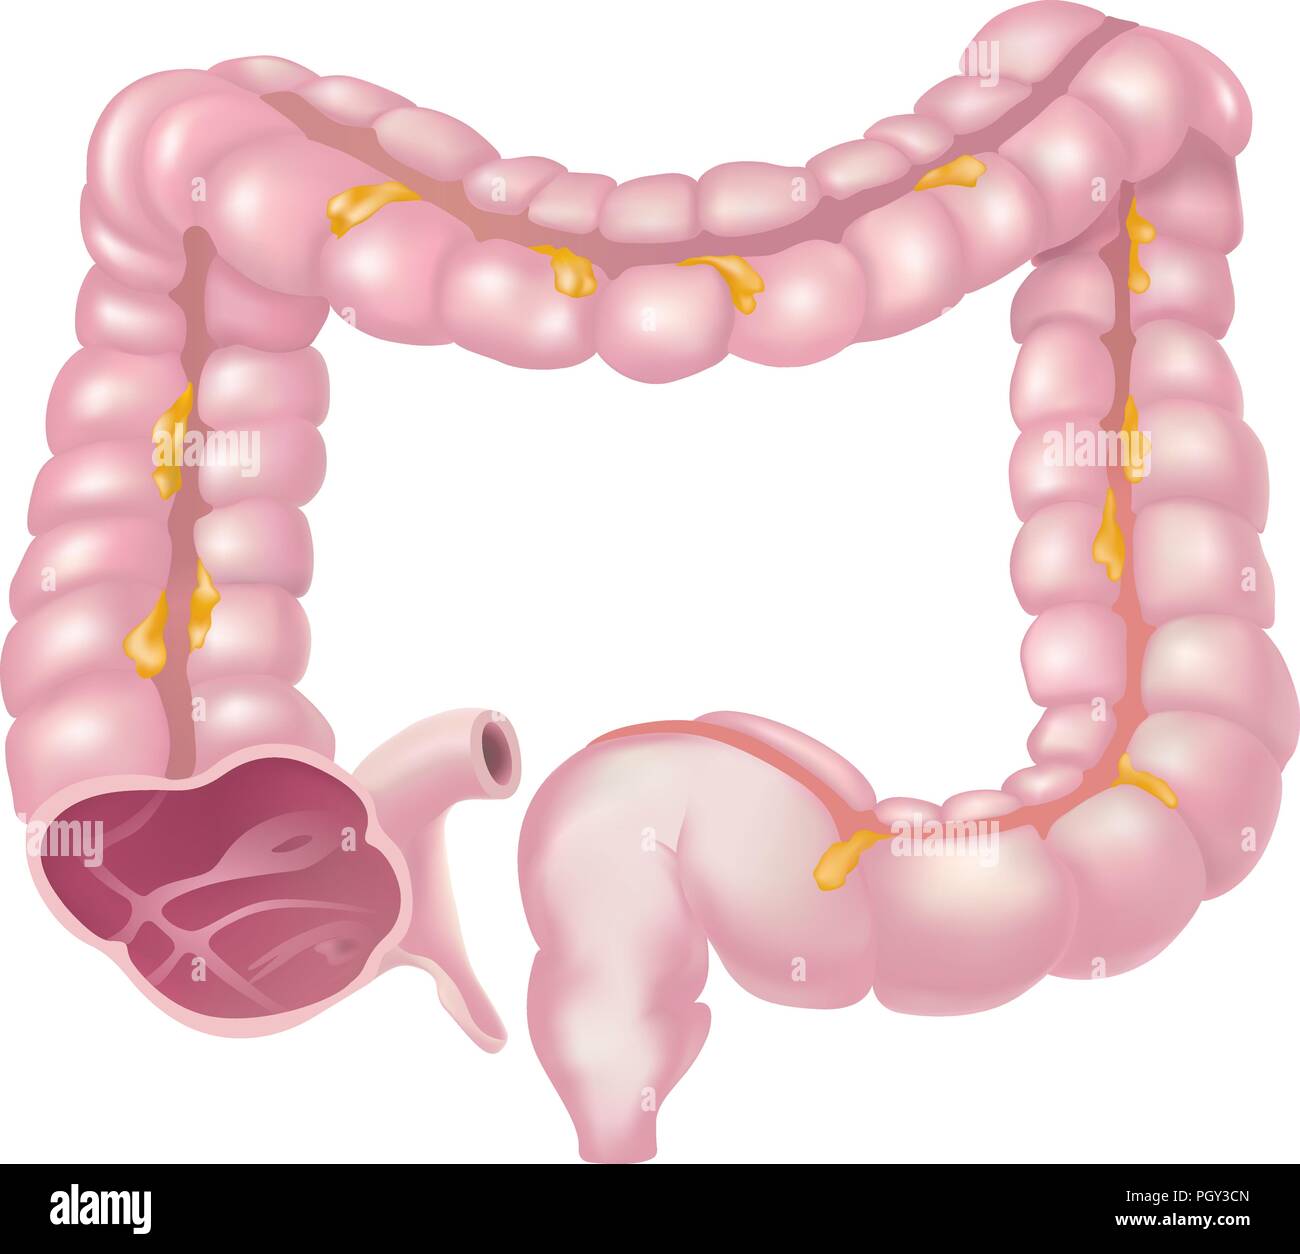 Le gros intestin, appelé aussi le côlon, fait partie de l'étape finale de la digestion Illustration de Vecteur